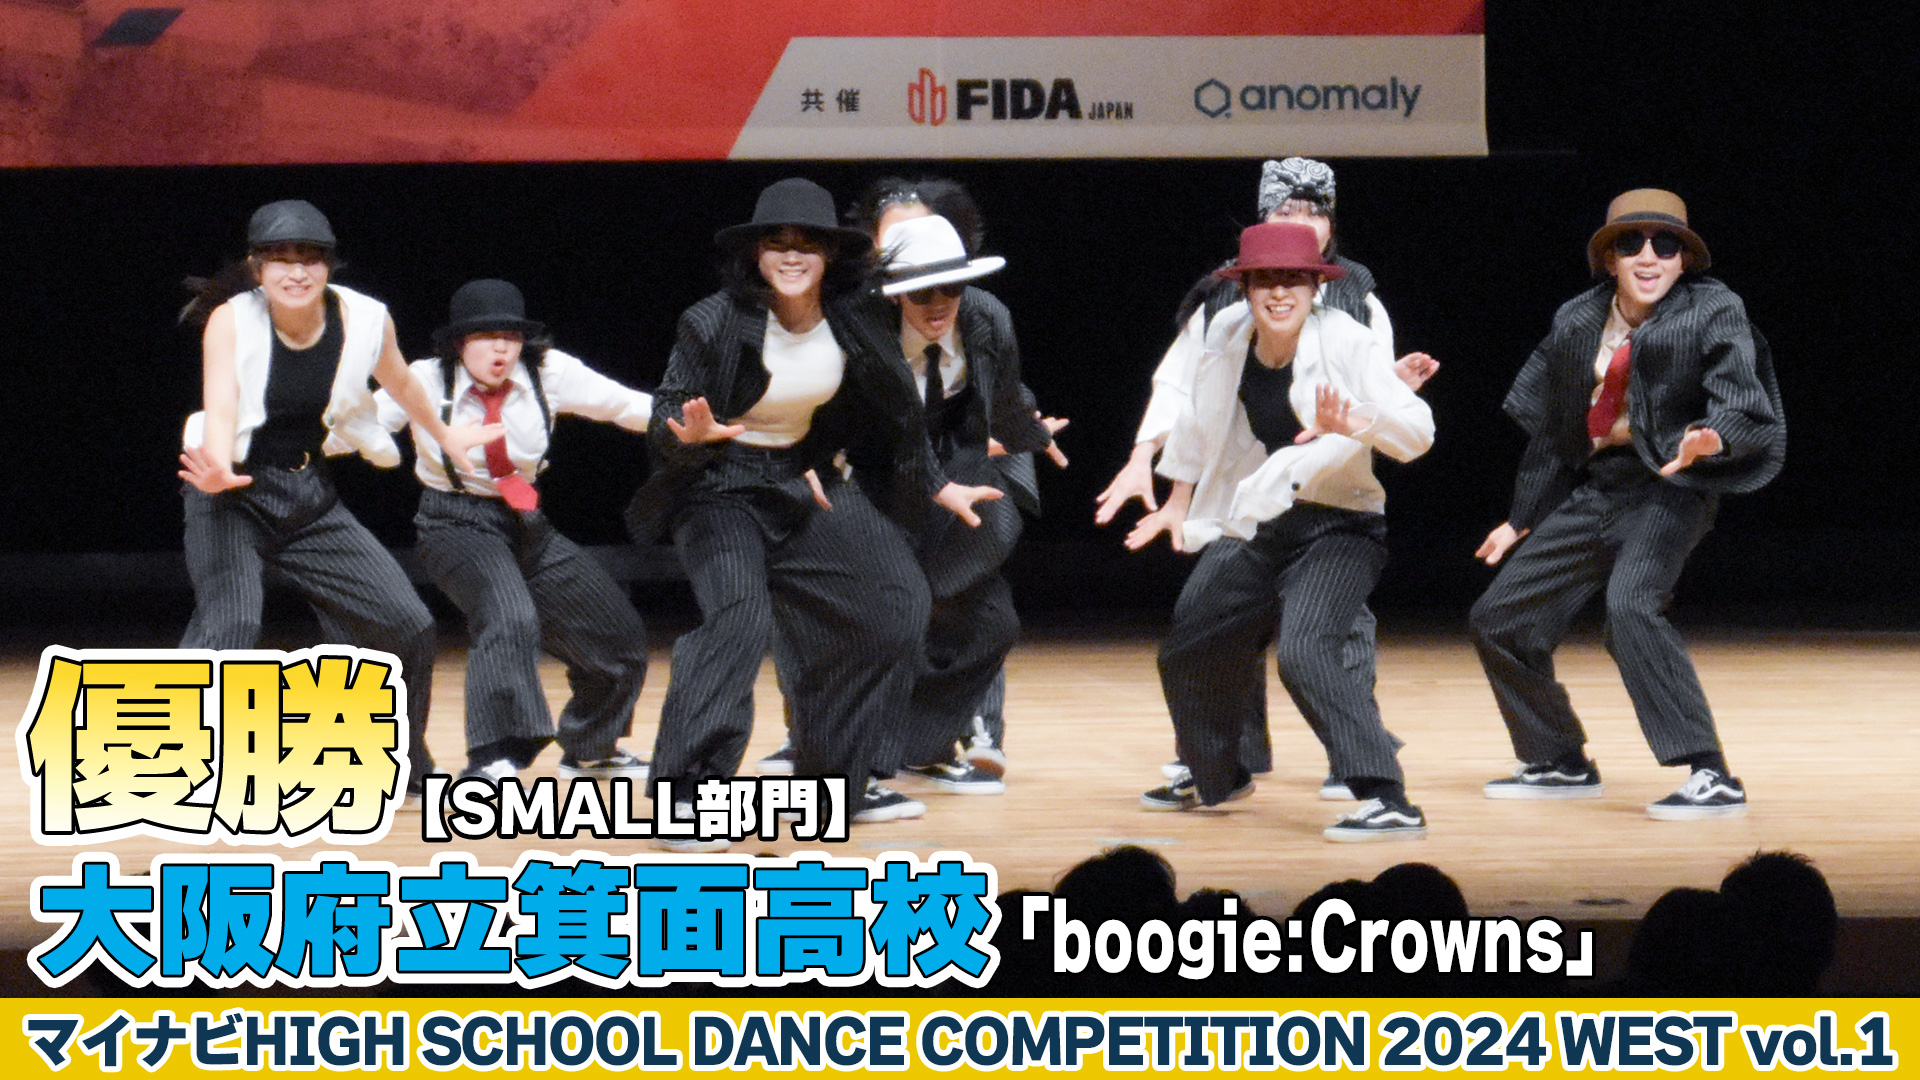 【動画】大阪府立箕面高校「boogie:Crowns」がSMALL部門で演技を披露！＜マイナビHIGH SCHOOL DANCE COMPETITION 2024 WEST vol.2＞